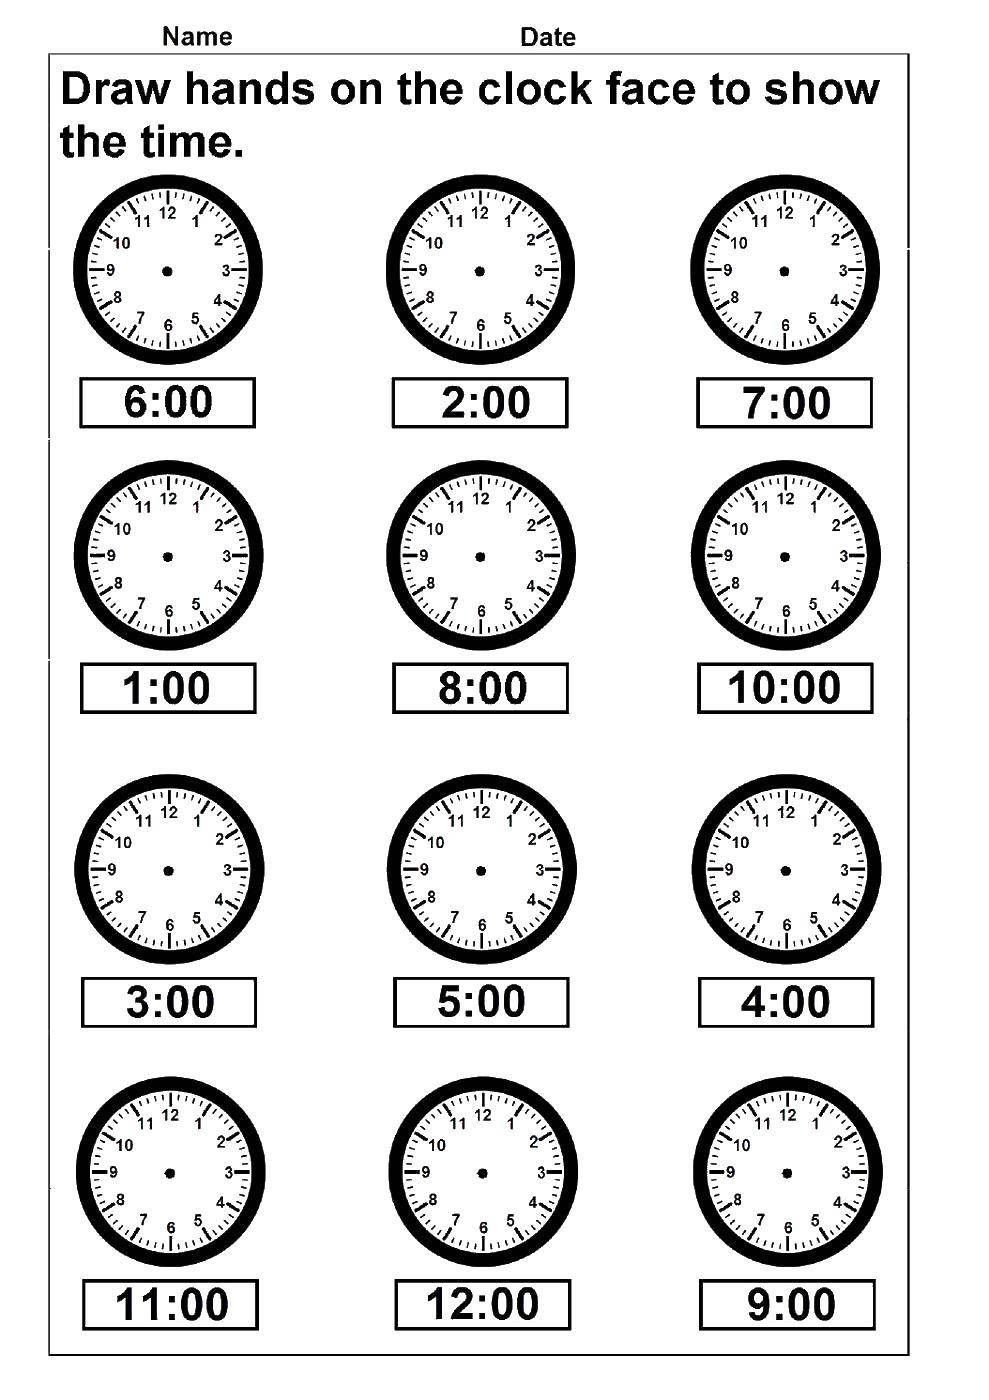 Название: Раскраска Время. Категория: раскраски. Теги: учим время, часы.